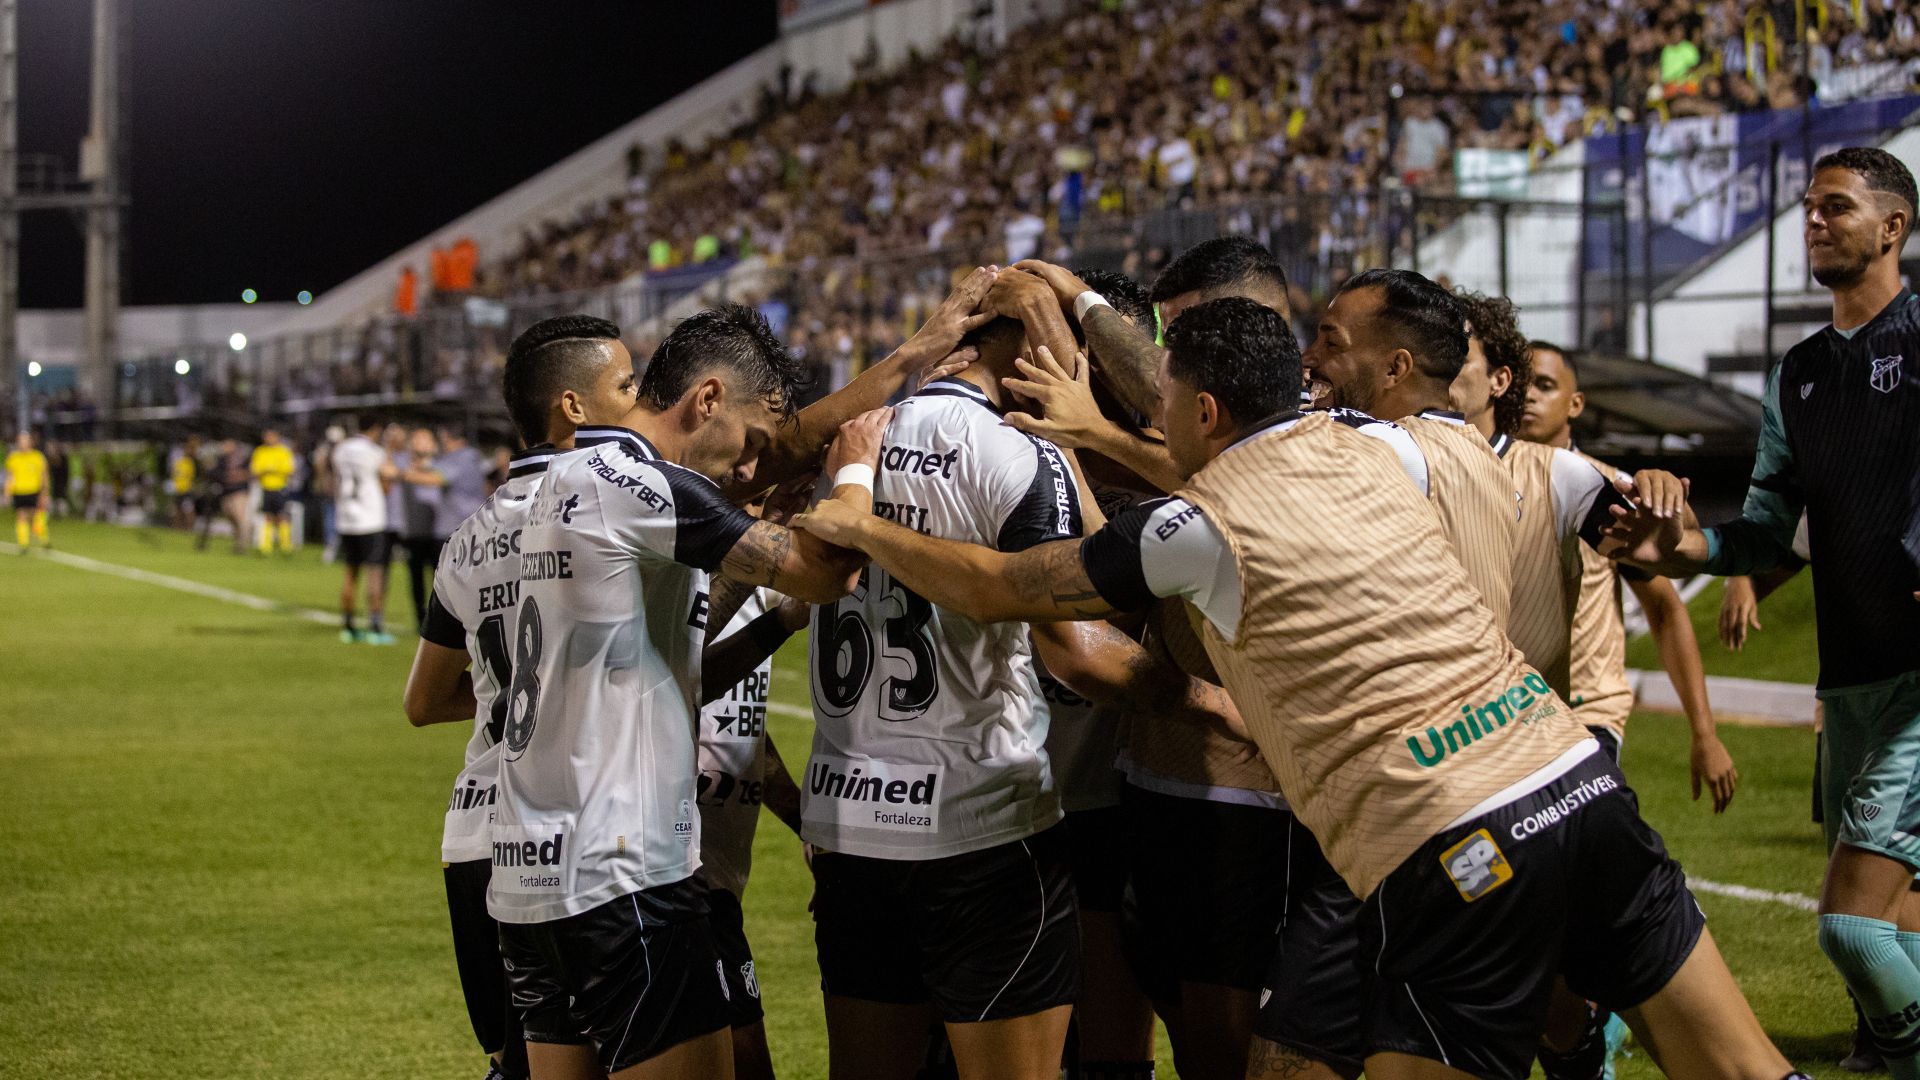 Jogadores do Ceará comemorando vitória contra o ABC (Crédito: Felipe Santos / SC Ceará)